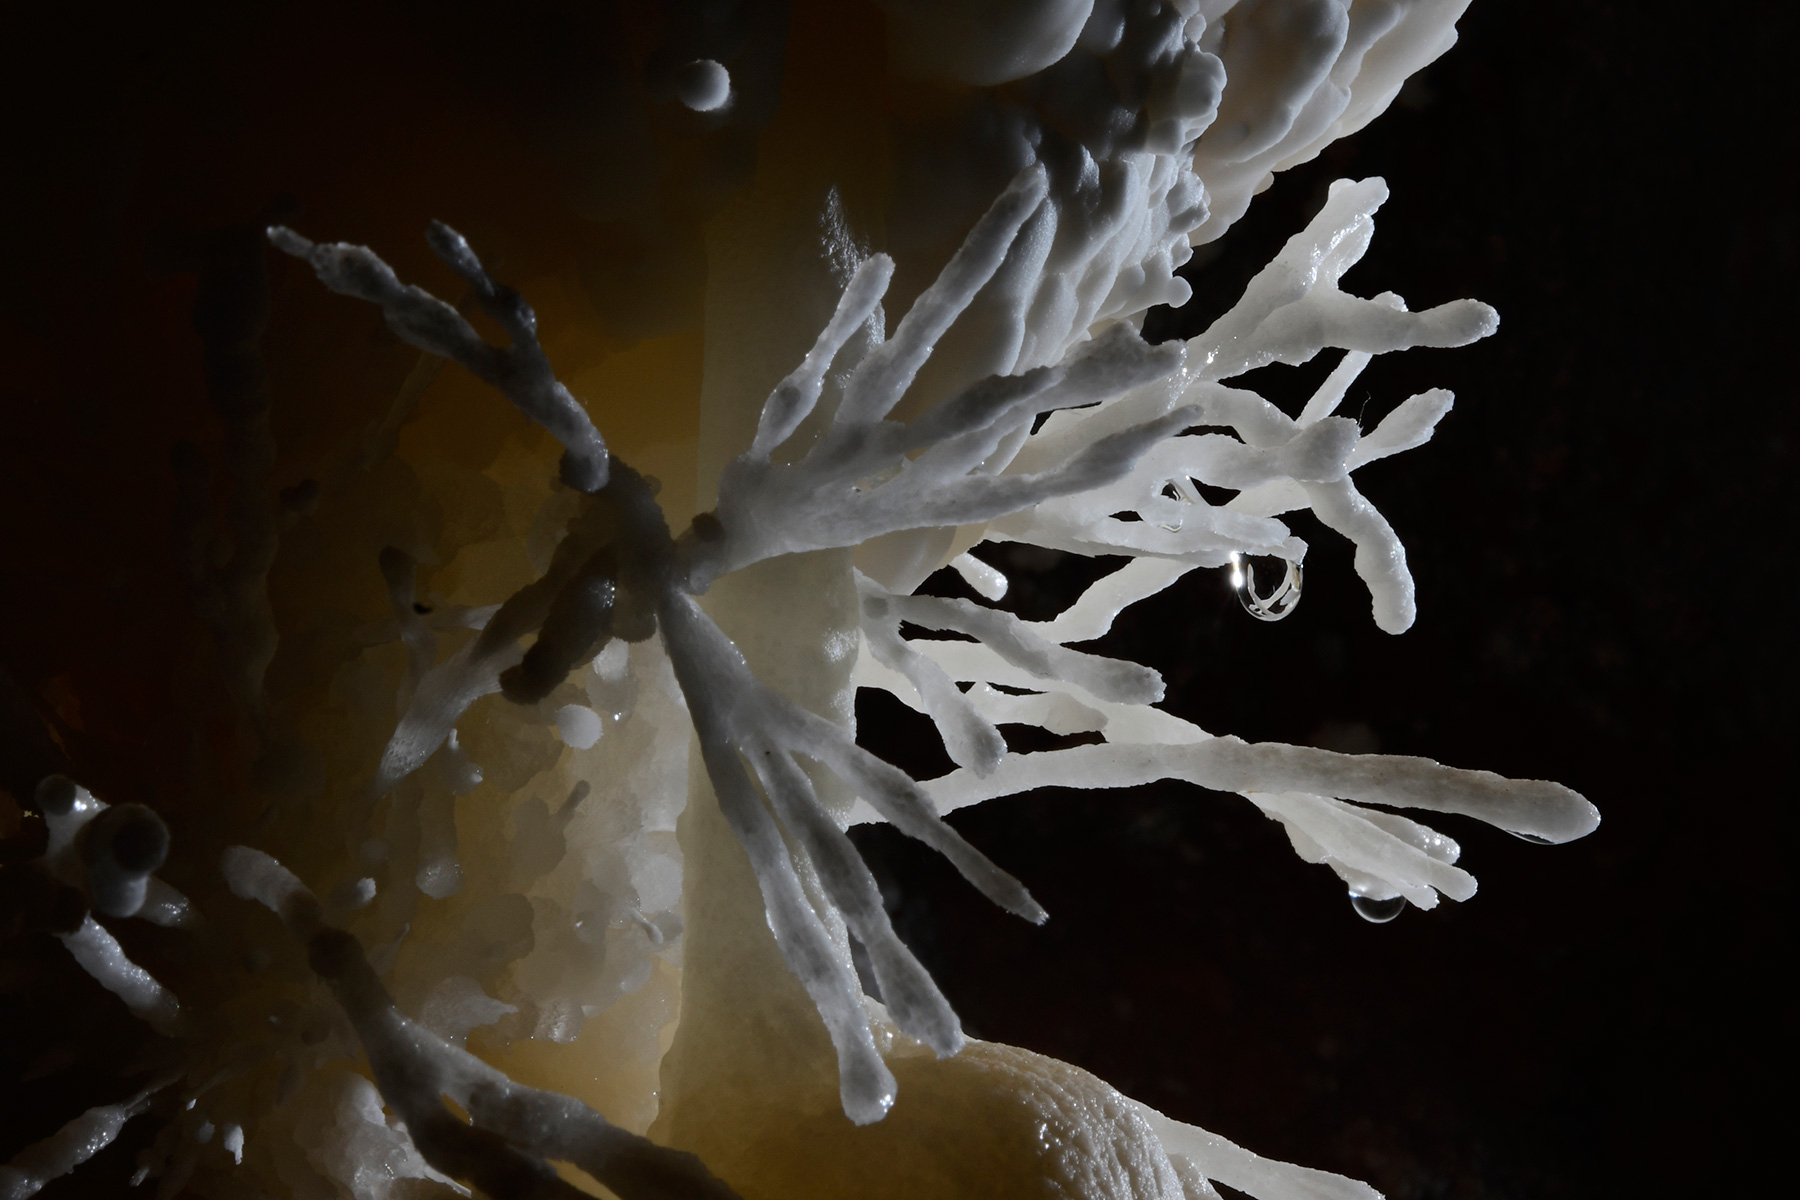 Cave of the Winds (USA - Colorado) - Détail d'aragonite  coralloïde avec goutte d'eau